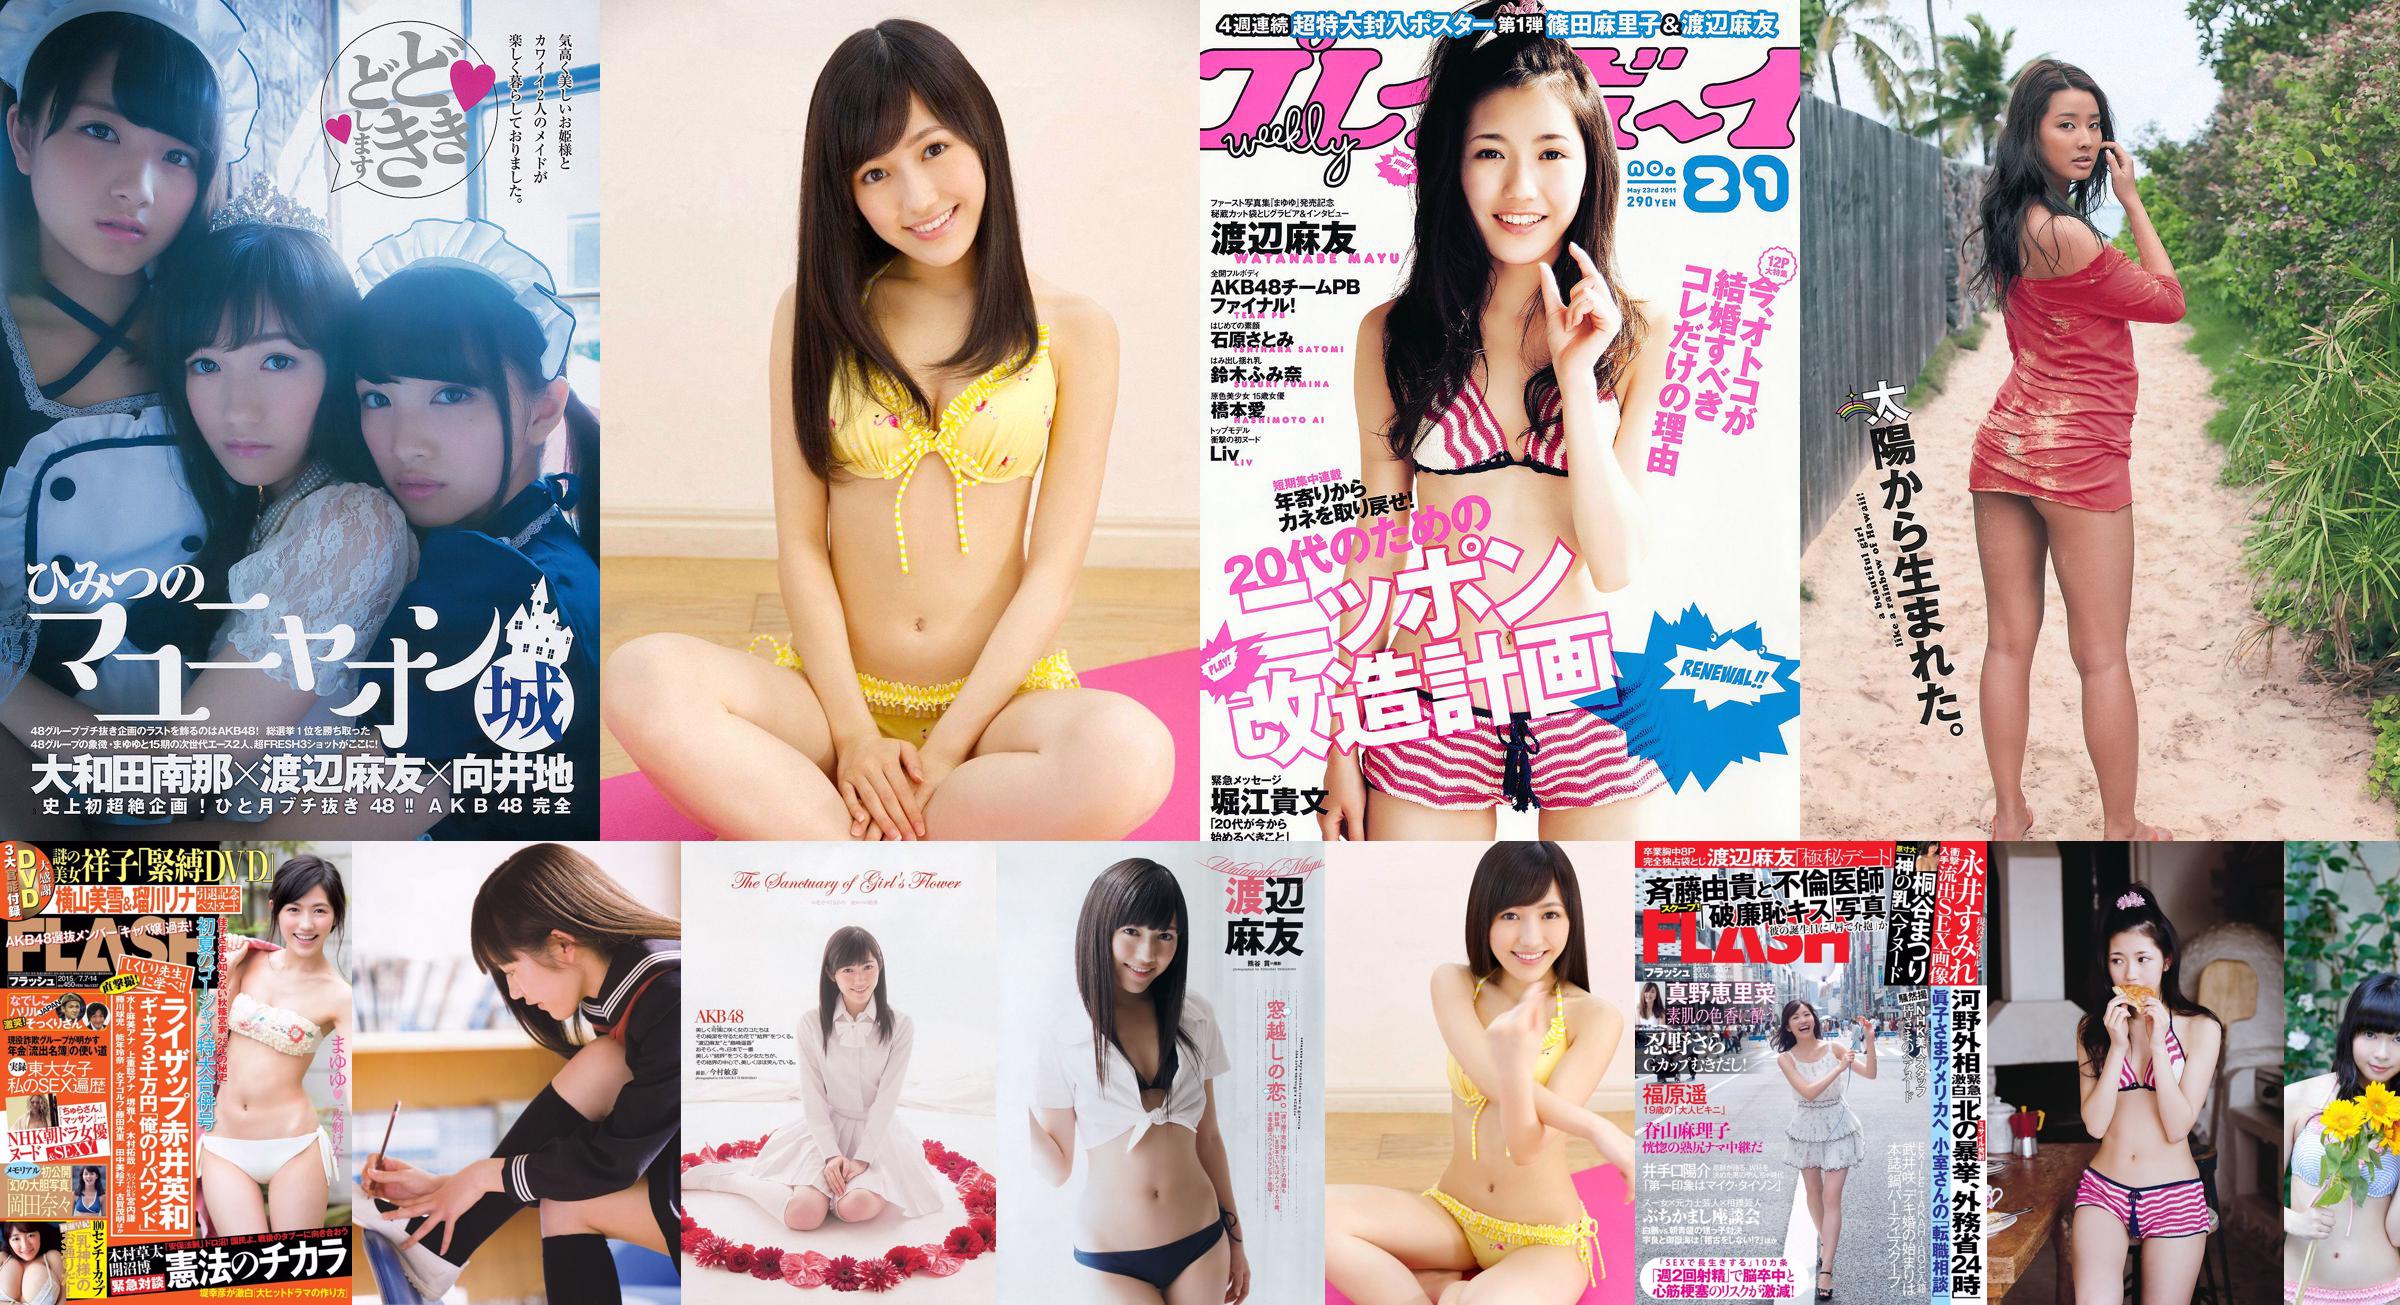 Mayu Watanabe Yumi Sugimoto Anna Ishibashi Miwako Kakei SKE48 Aya Nakata Yume Hazuki [Playboy semanal] 2014 No.36 Foto Miwako No.71ede2 Página 1